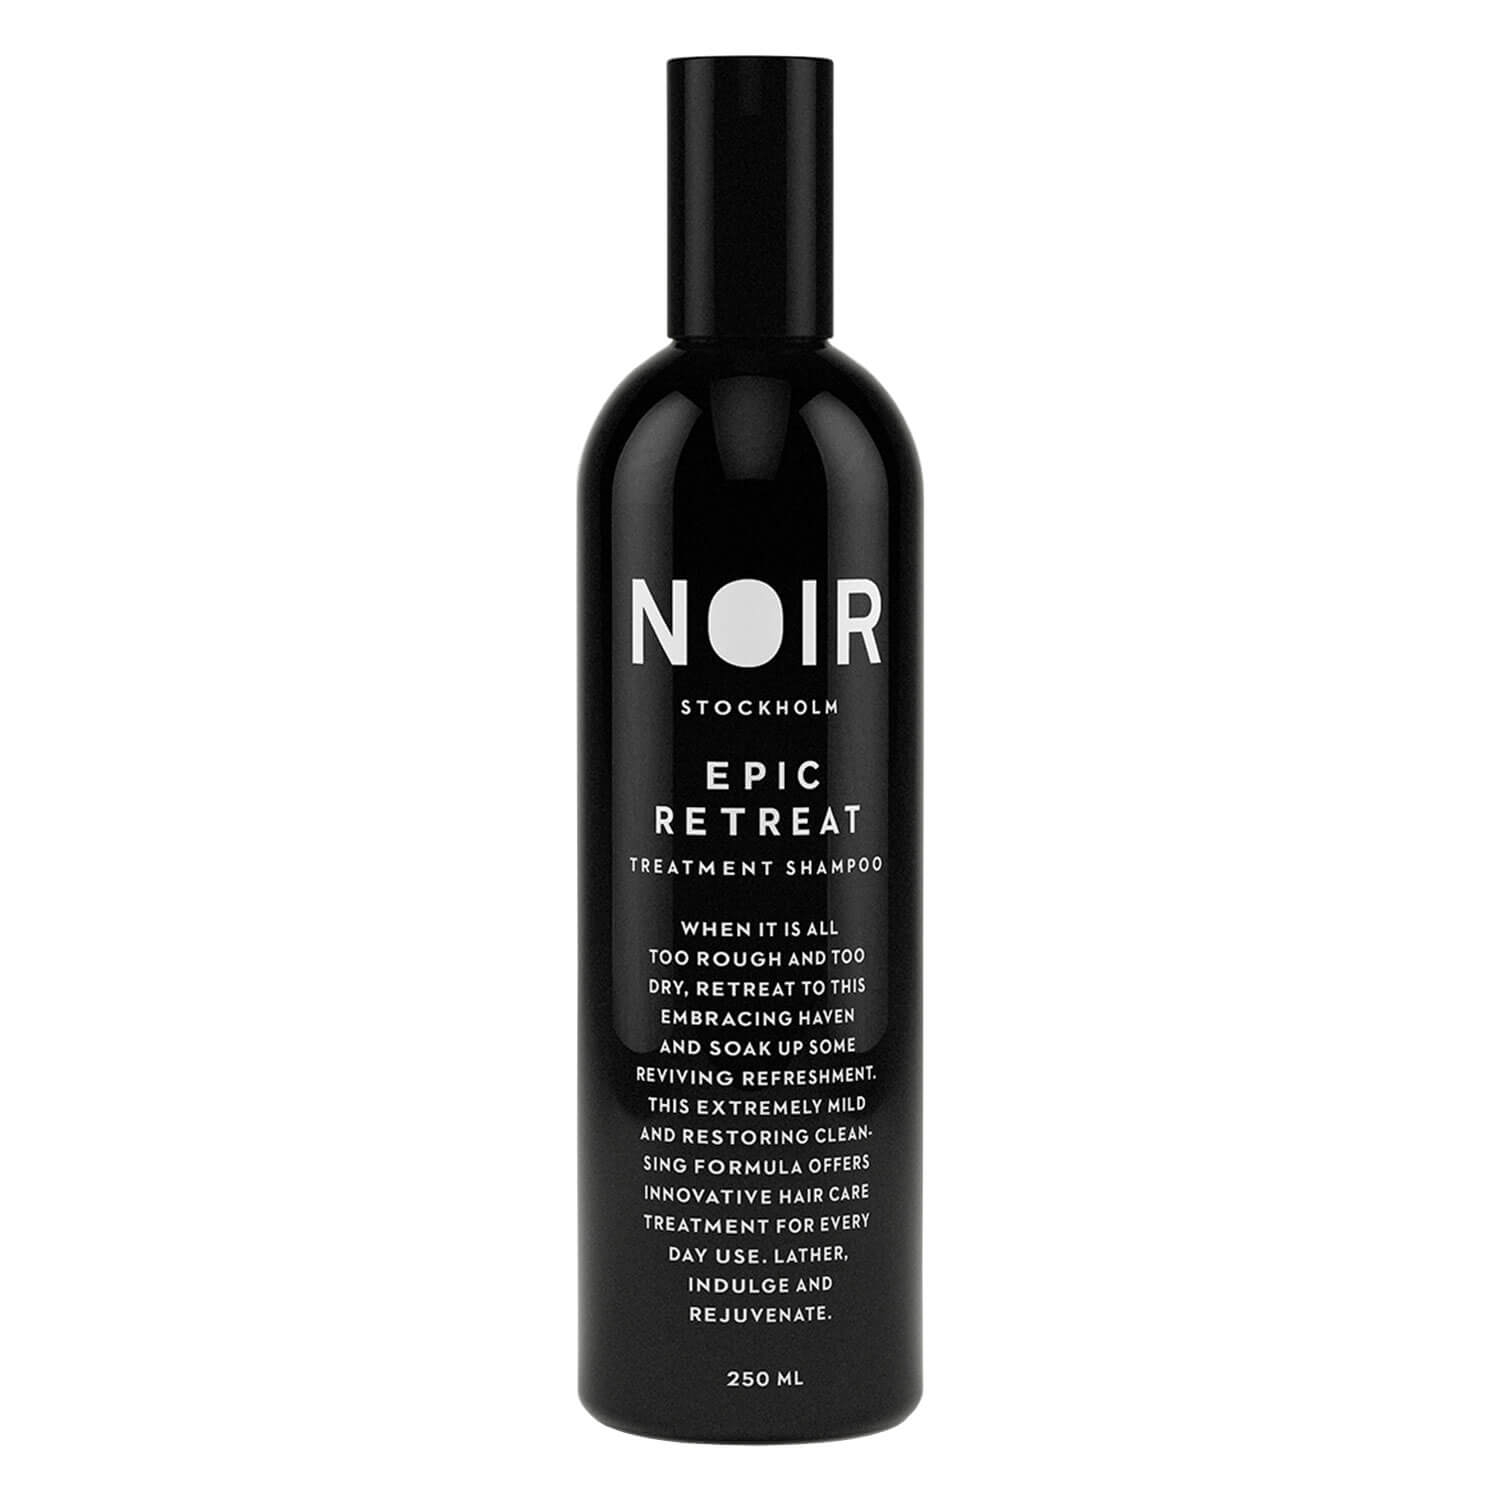 Produktbild von NOIR - Epic Retreat Treatment Shampoo